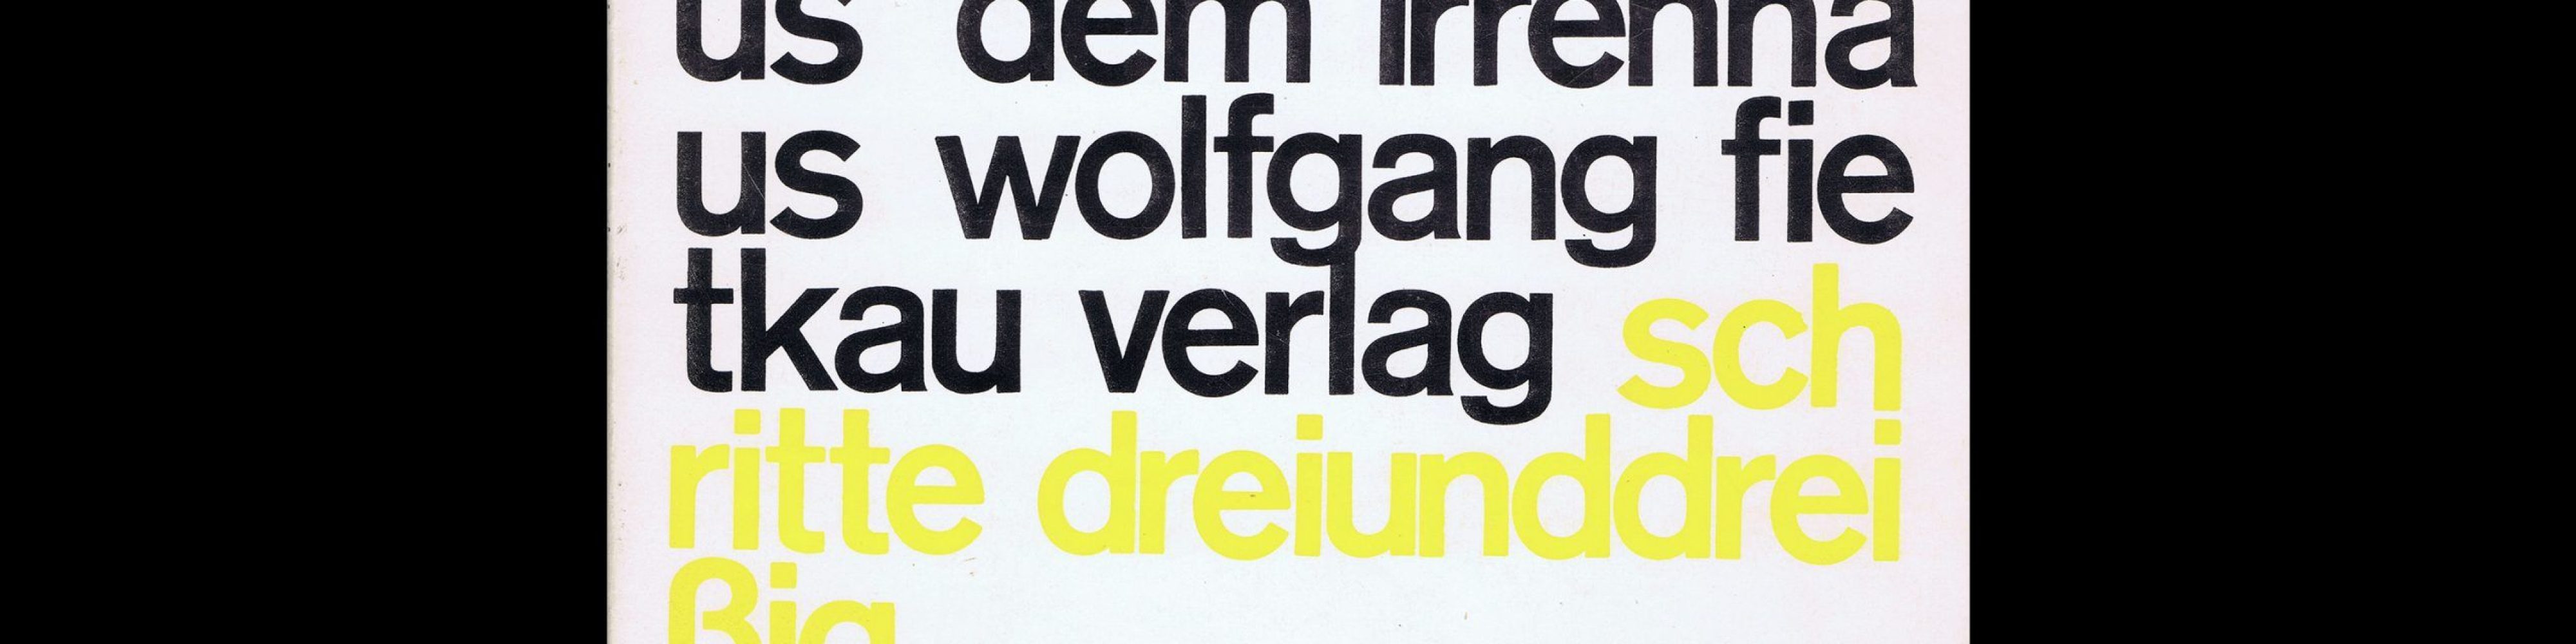 Heinz-Jürgen Harder, Gedichte aus dem Irrenhaus, Wolfgang Fietkau Verlag, 1979. Designed by Christian Chruxin